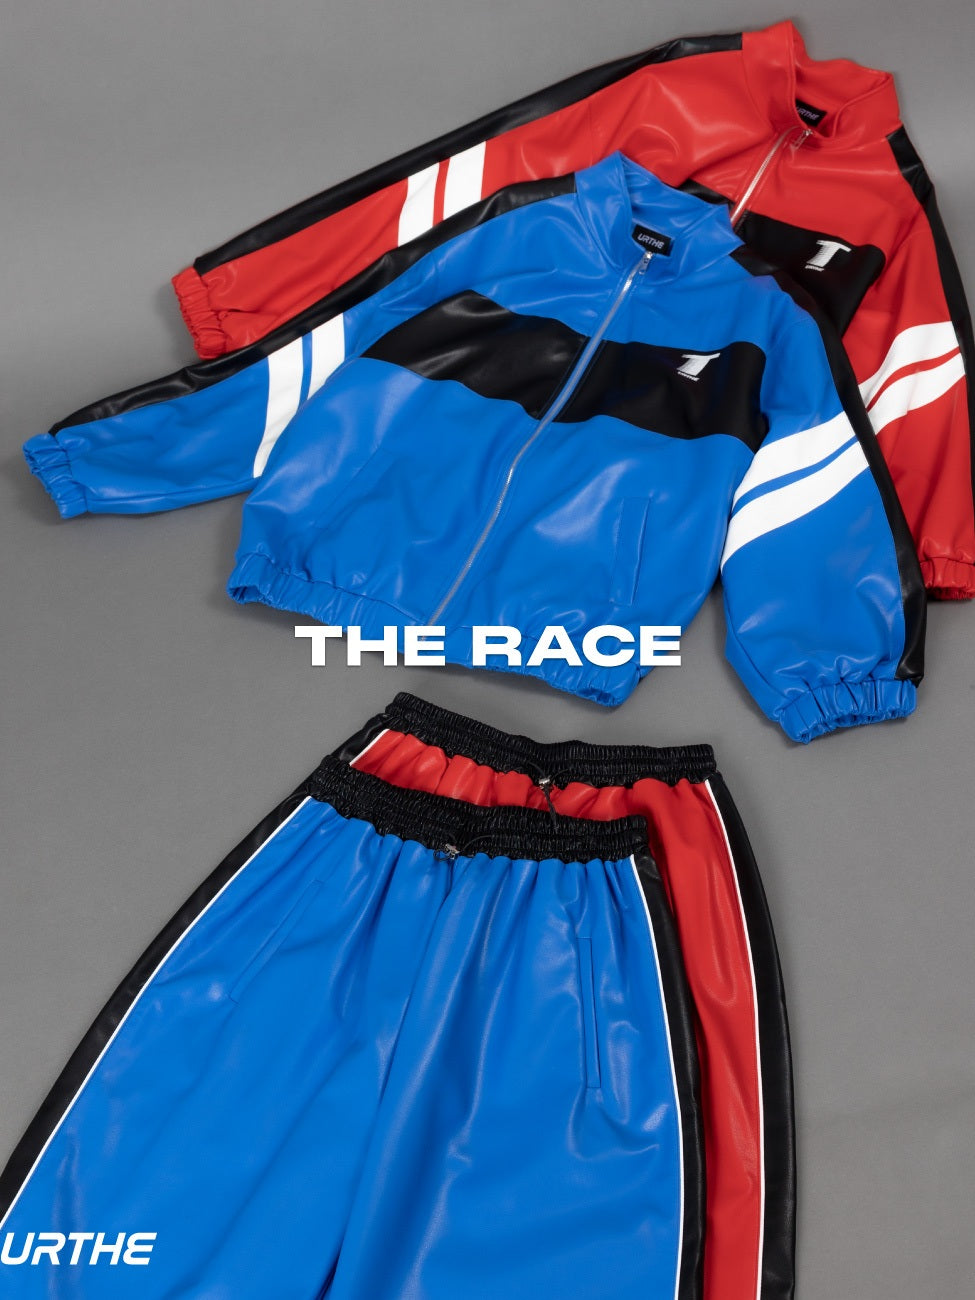 URTHE - เซ็ตเสื้อแจ็คเก็ตหนัง PU แขนยาว สกรีนลาย รุ่น THE RACE JACKET SET